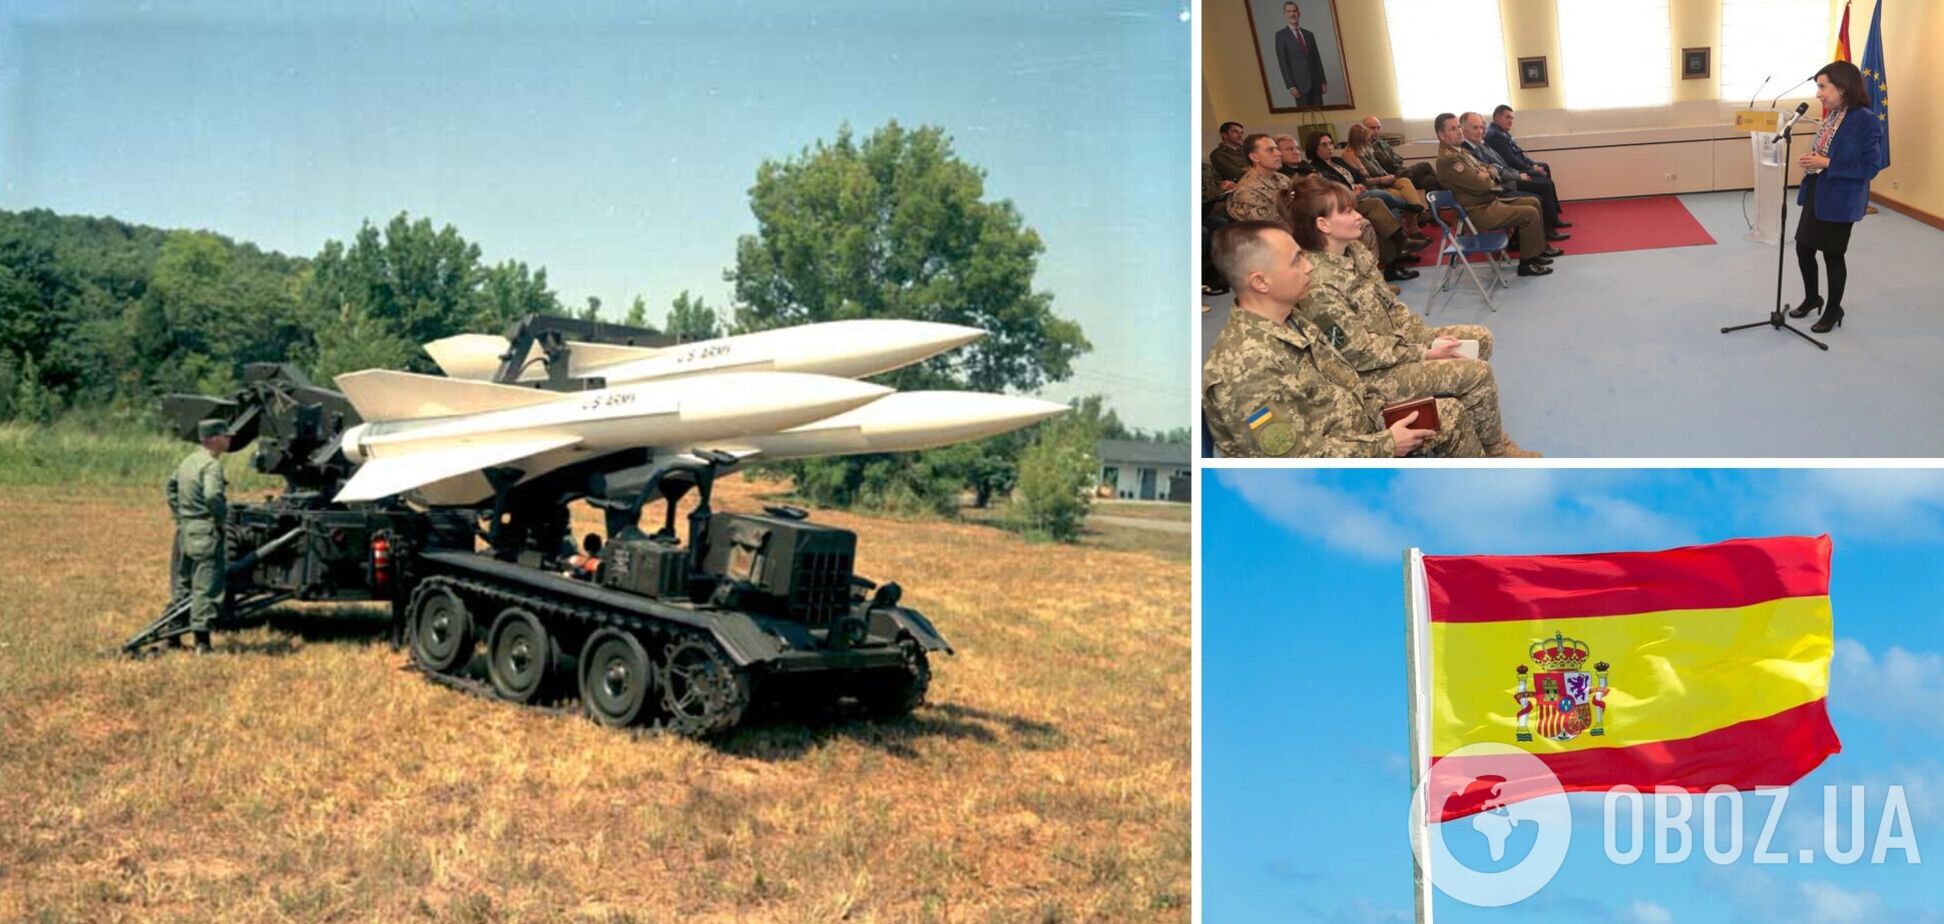 Испания отправит Украине еще два комплекса ПВО Hawk, – министр обороны